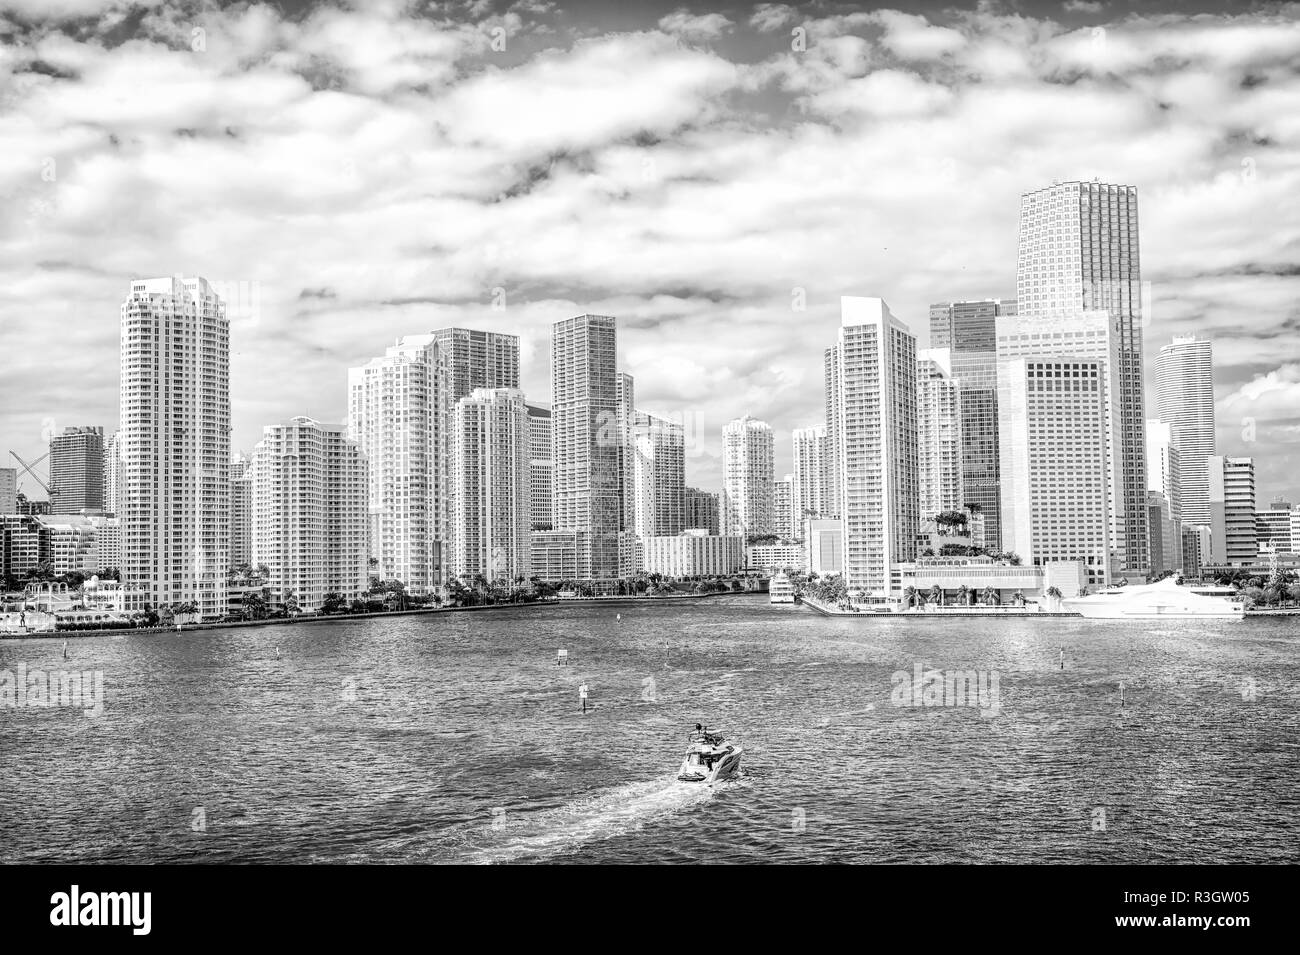 La ville de Miami. Yachts voile sur mer ou l'eau de mer de gratte-ciel sur ciel nuageux ciel bleu à Miami, États-Unis. Des vacances d'été, wanderlust, les voyages, l Banque D'Images